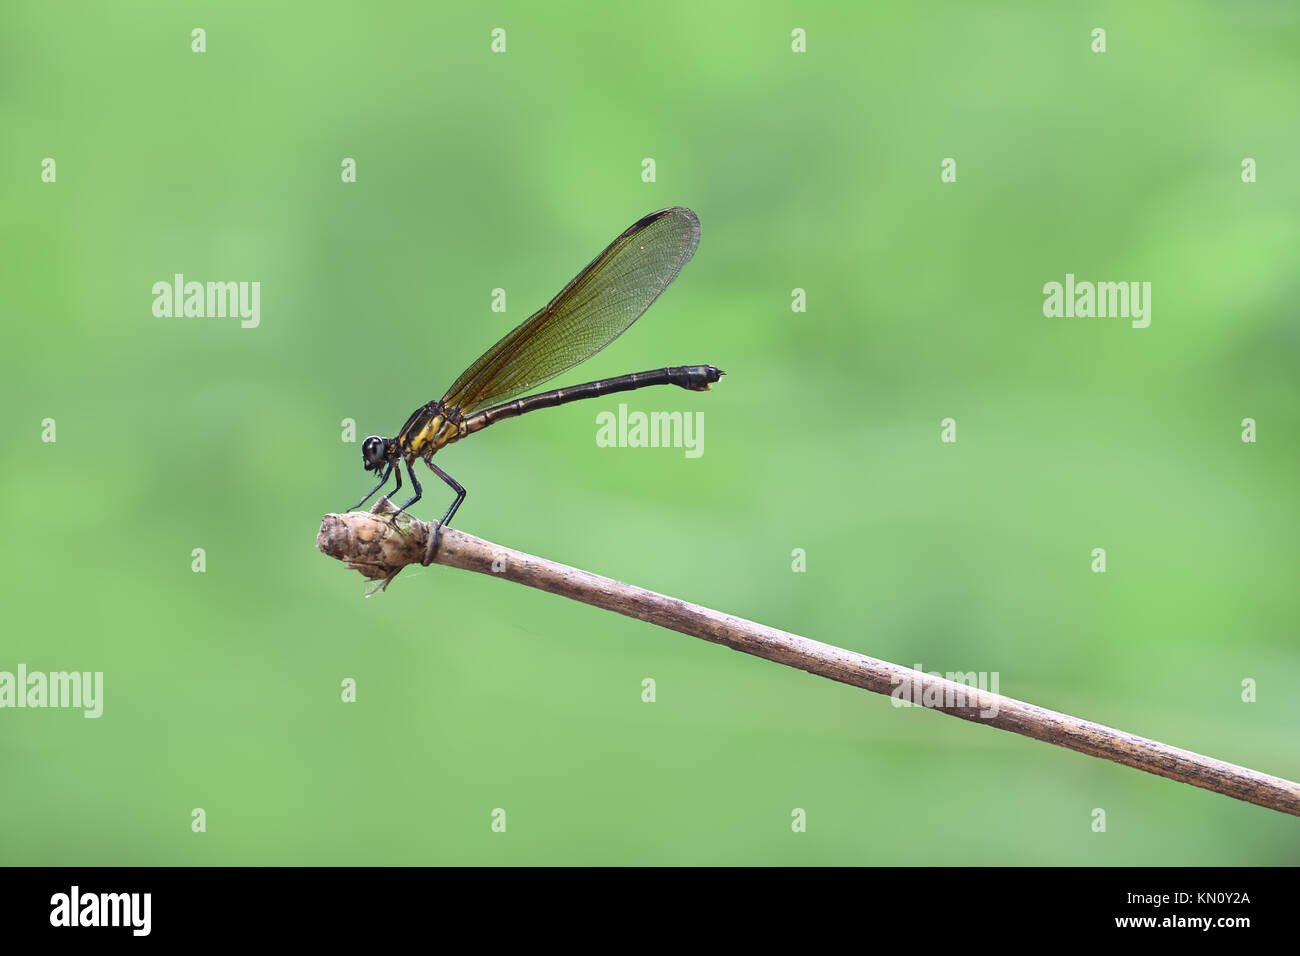 Damselfy amarillo/Dragon Fly/Zygoptera sentado en el borde del tallo de bambú Foto de stock